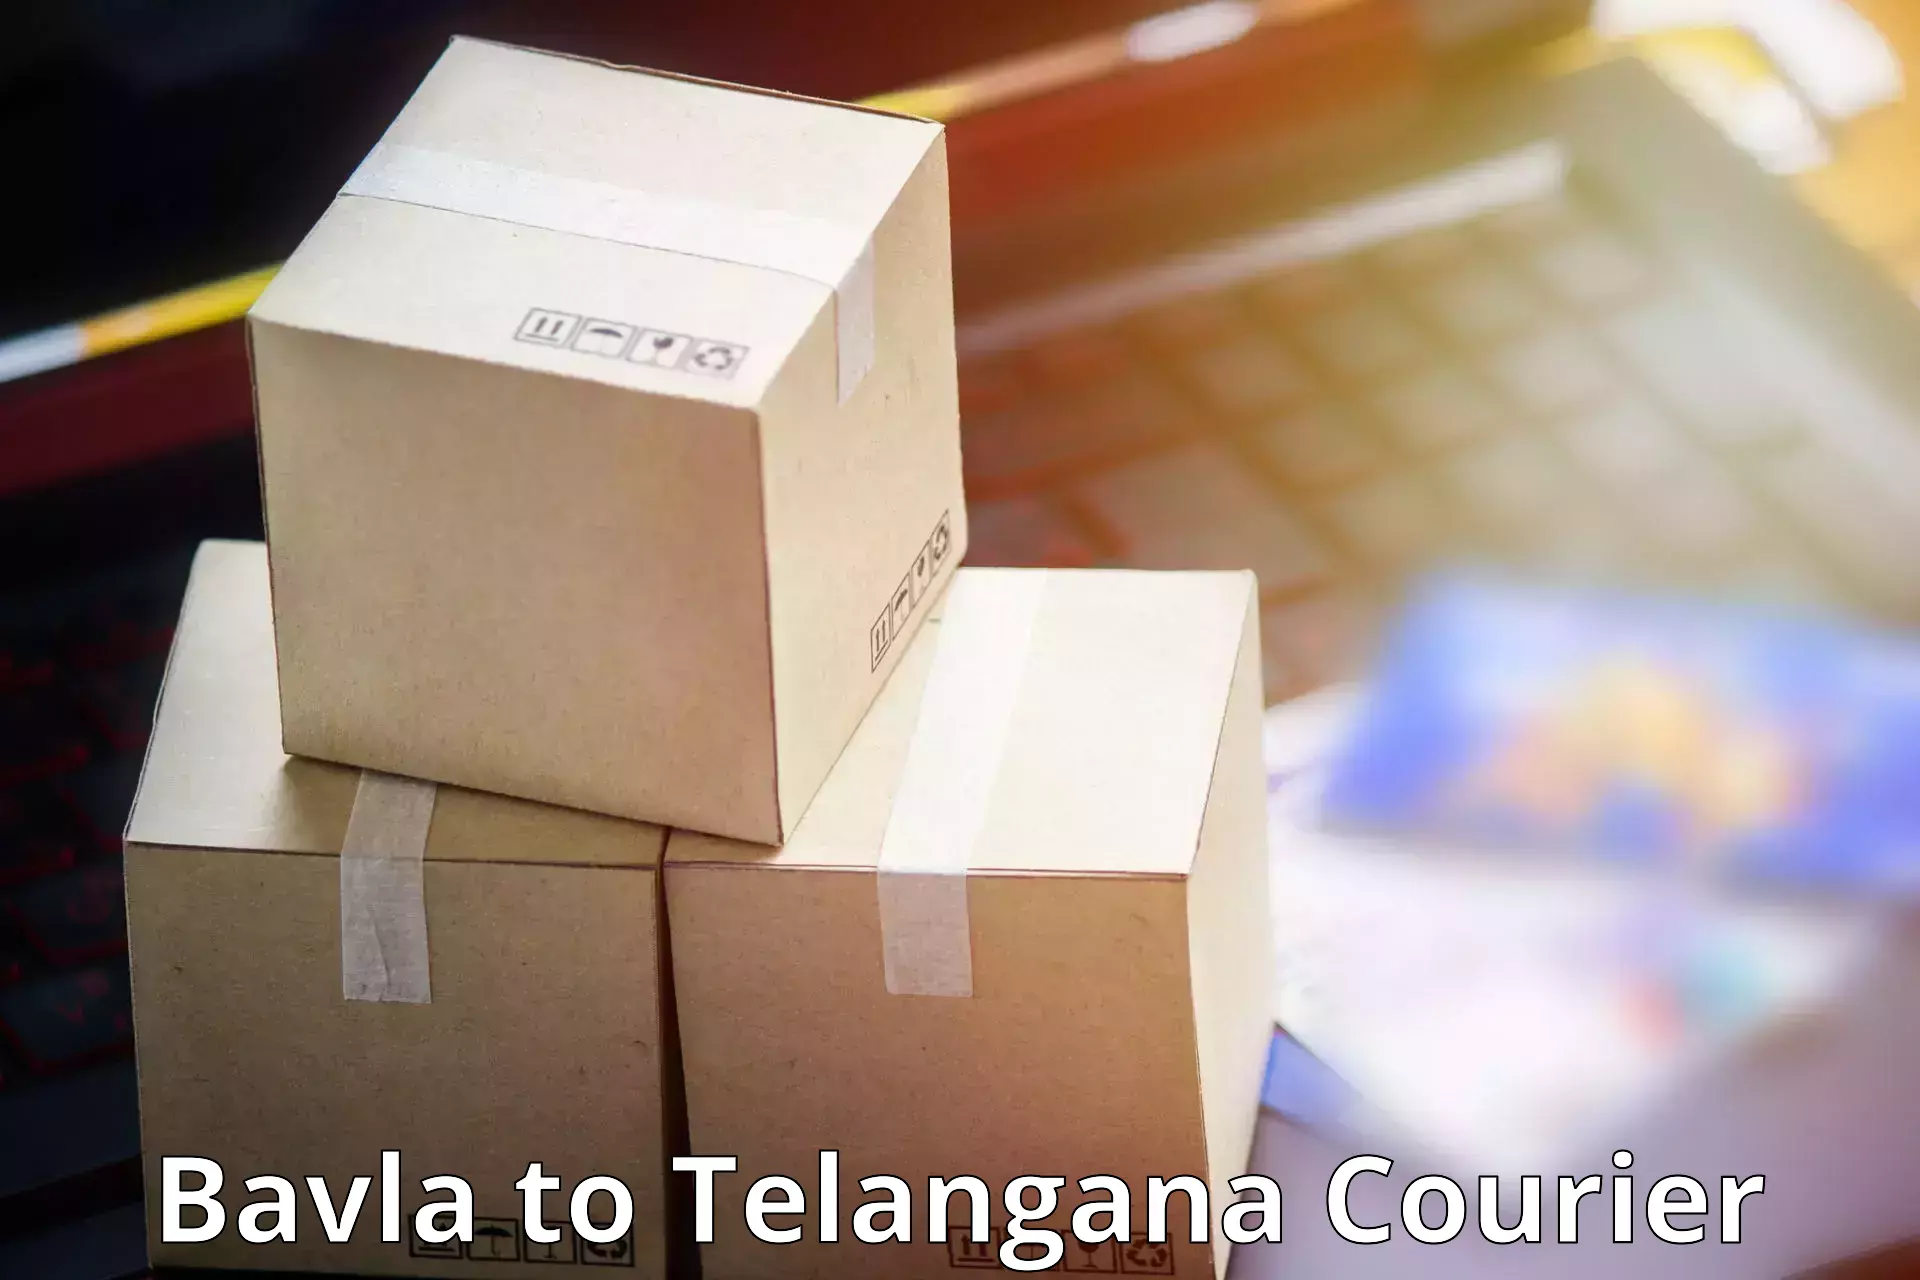 Advanced courier platforms Bavla to Bhainsa